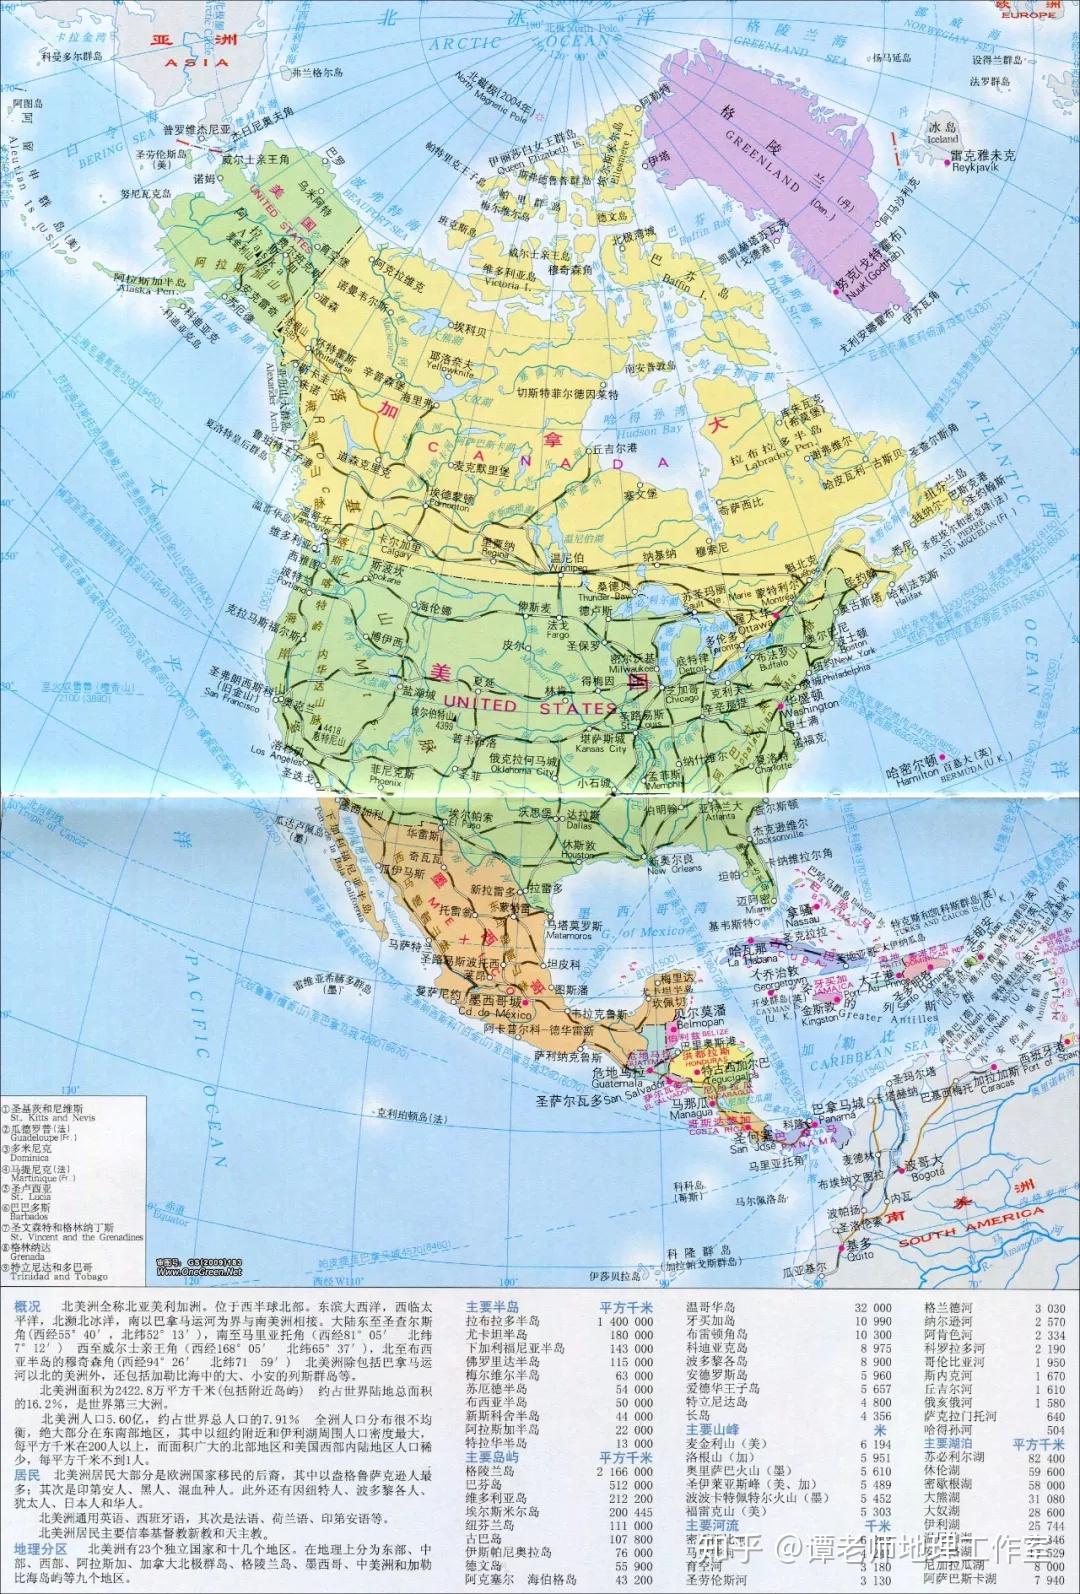 美国地图高清中文版高清版大地图_美国河流地图中文版_微信公众号文章